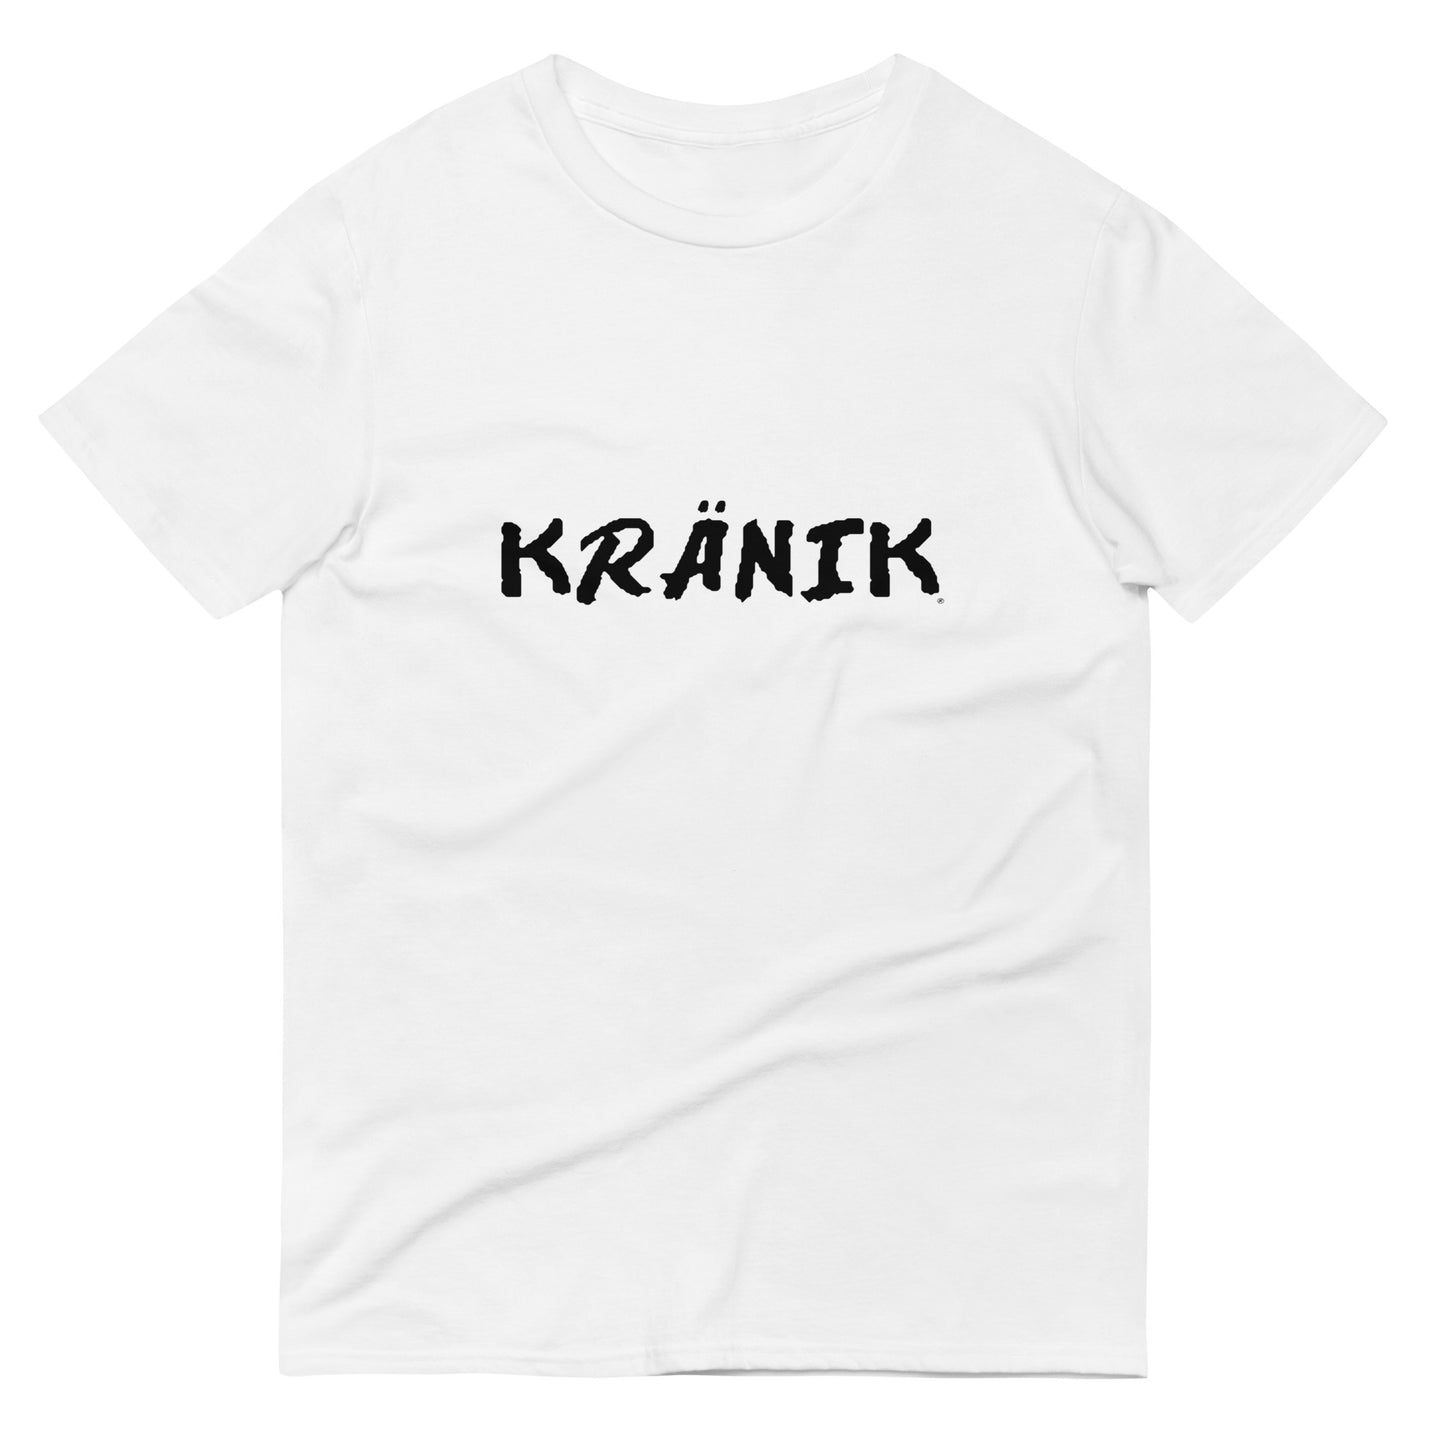 Kranik Brand / T-Shirt / OG DARE Logo / White / Black